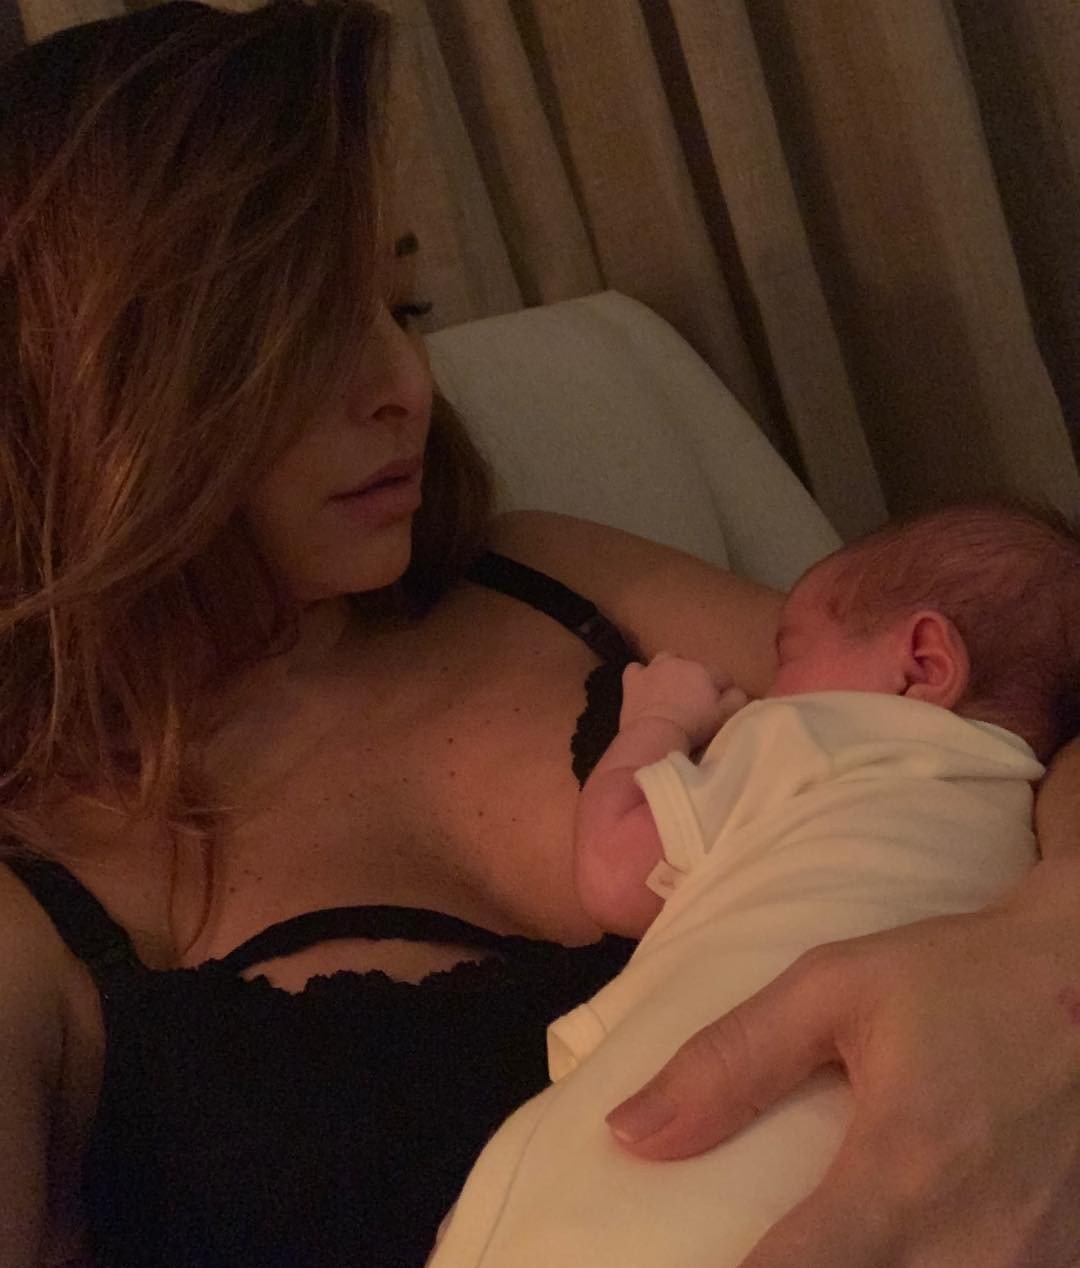 Sabrina amamentando a filha na madrugada (Foto: Reprodução/ Instagram)